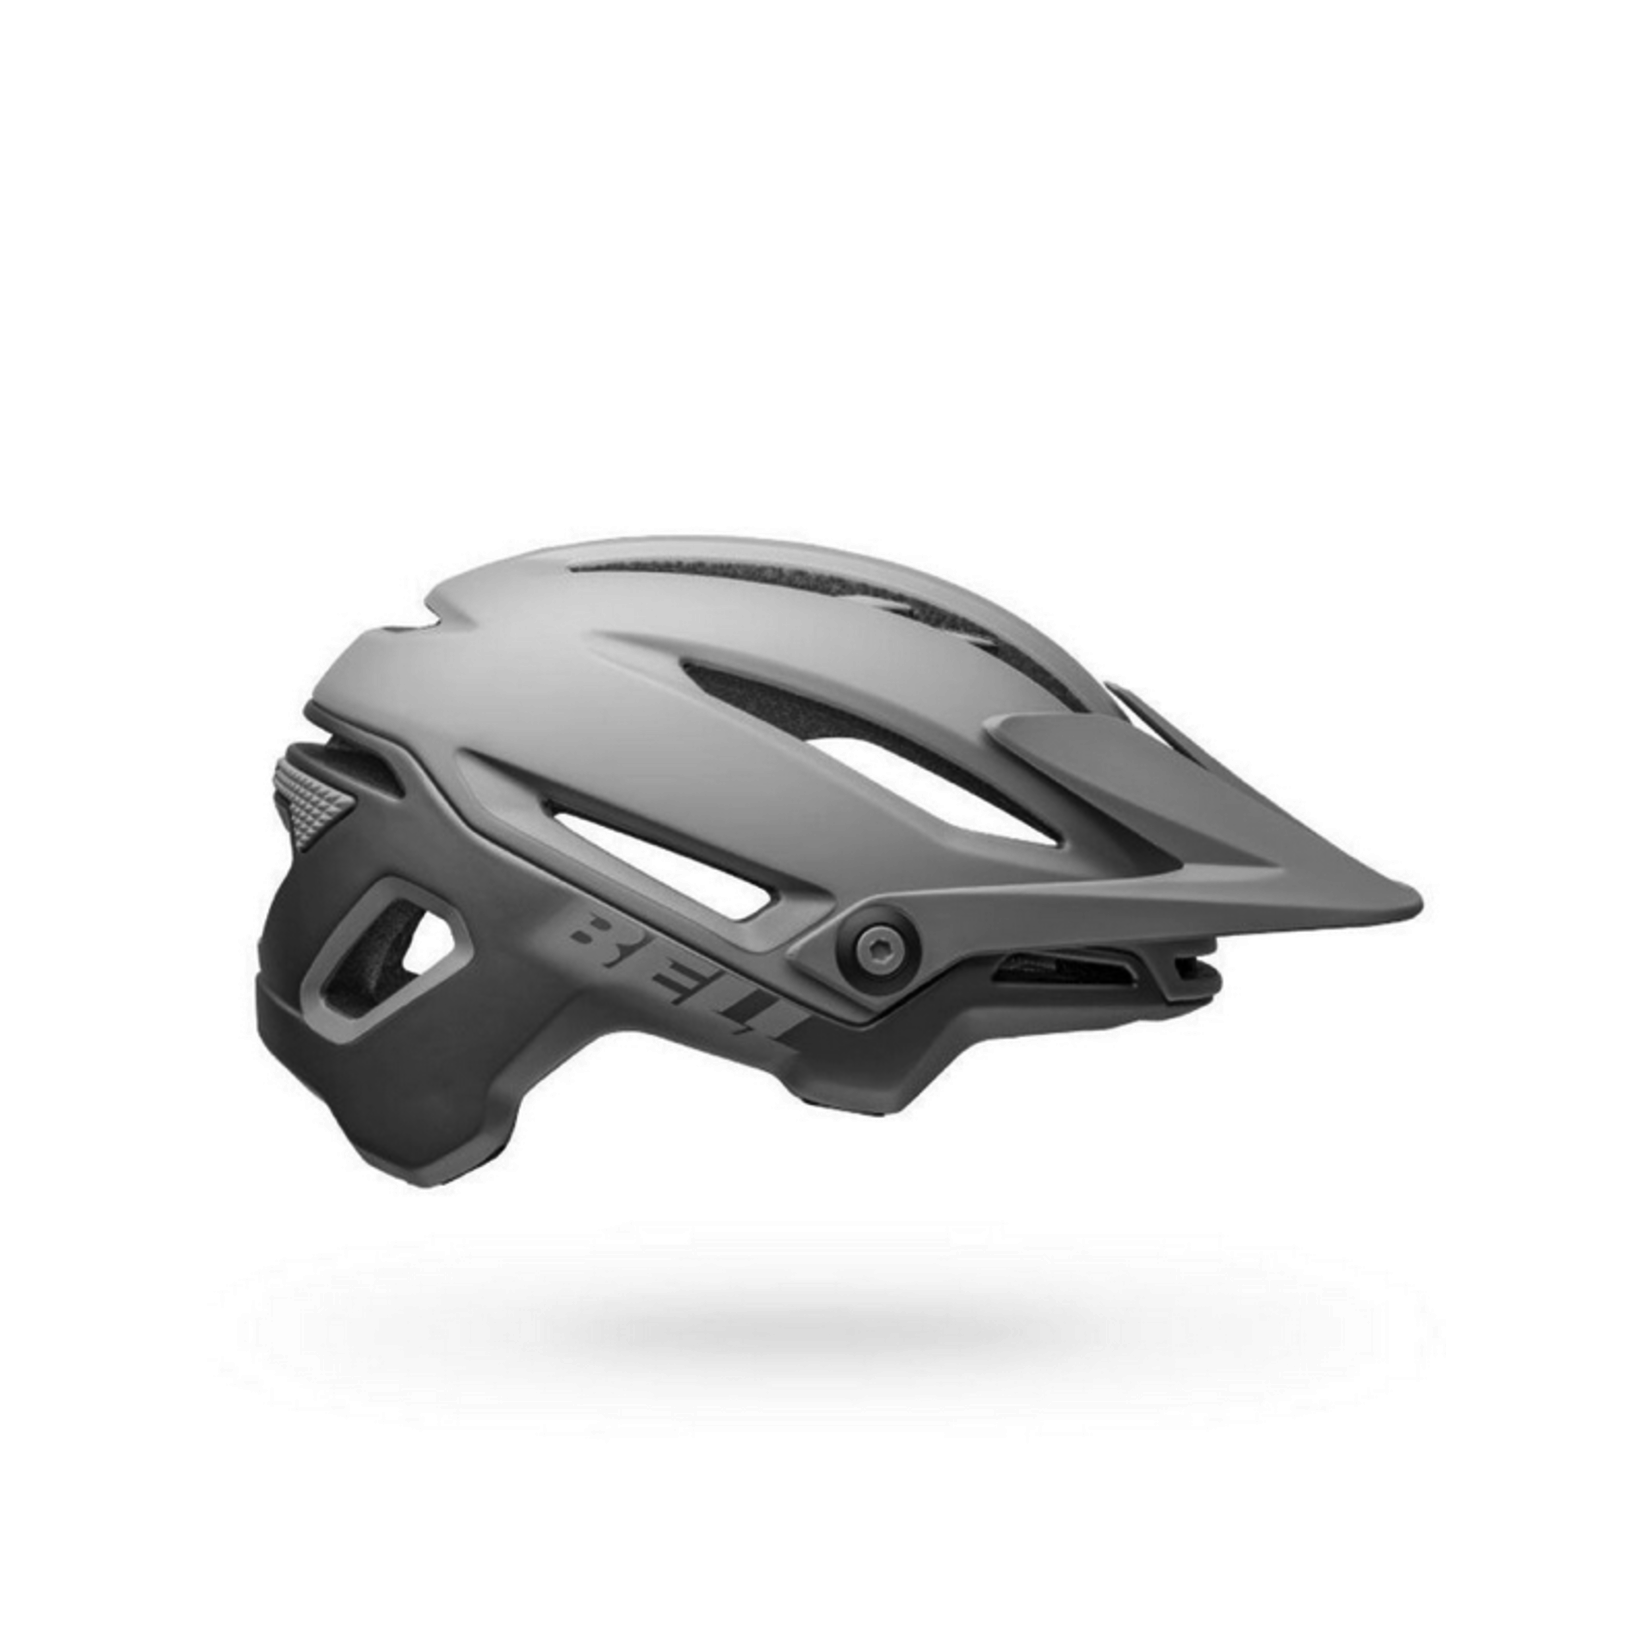 Bell Sixer MIPS Helmet: